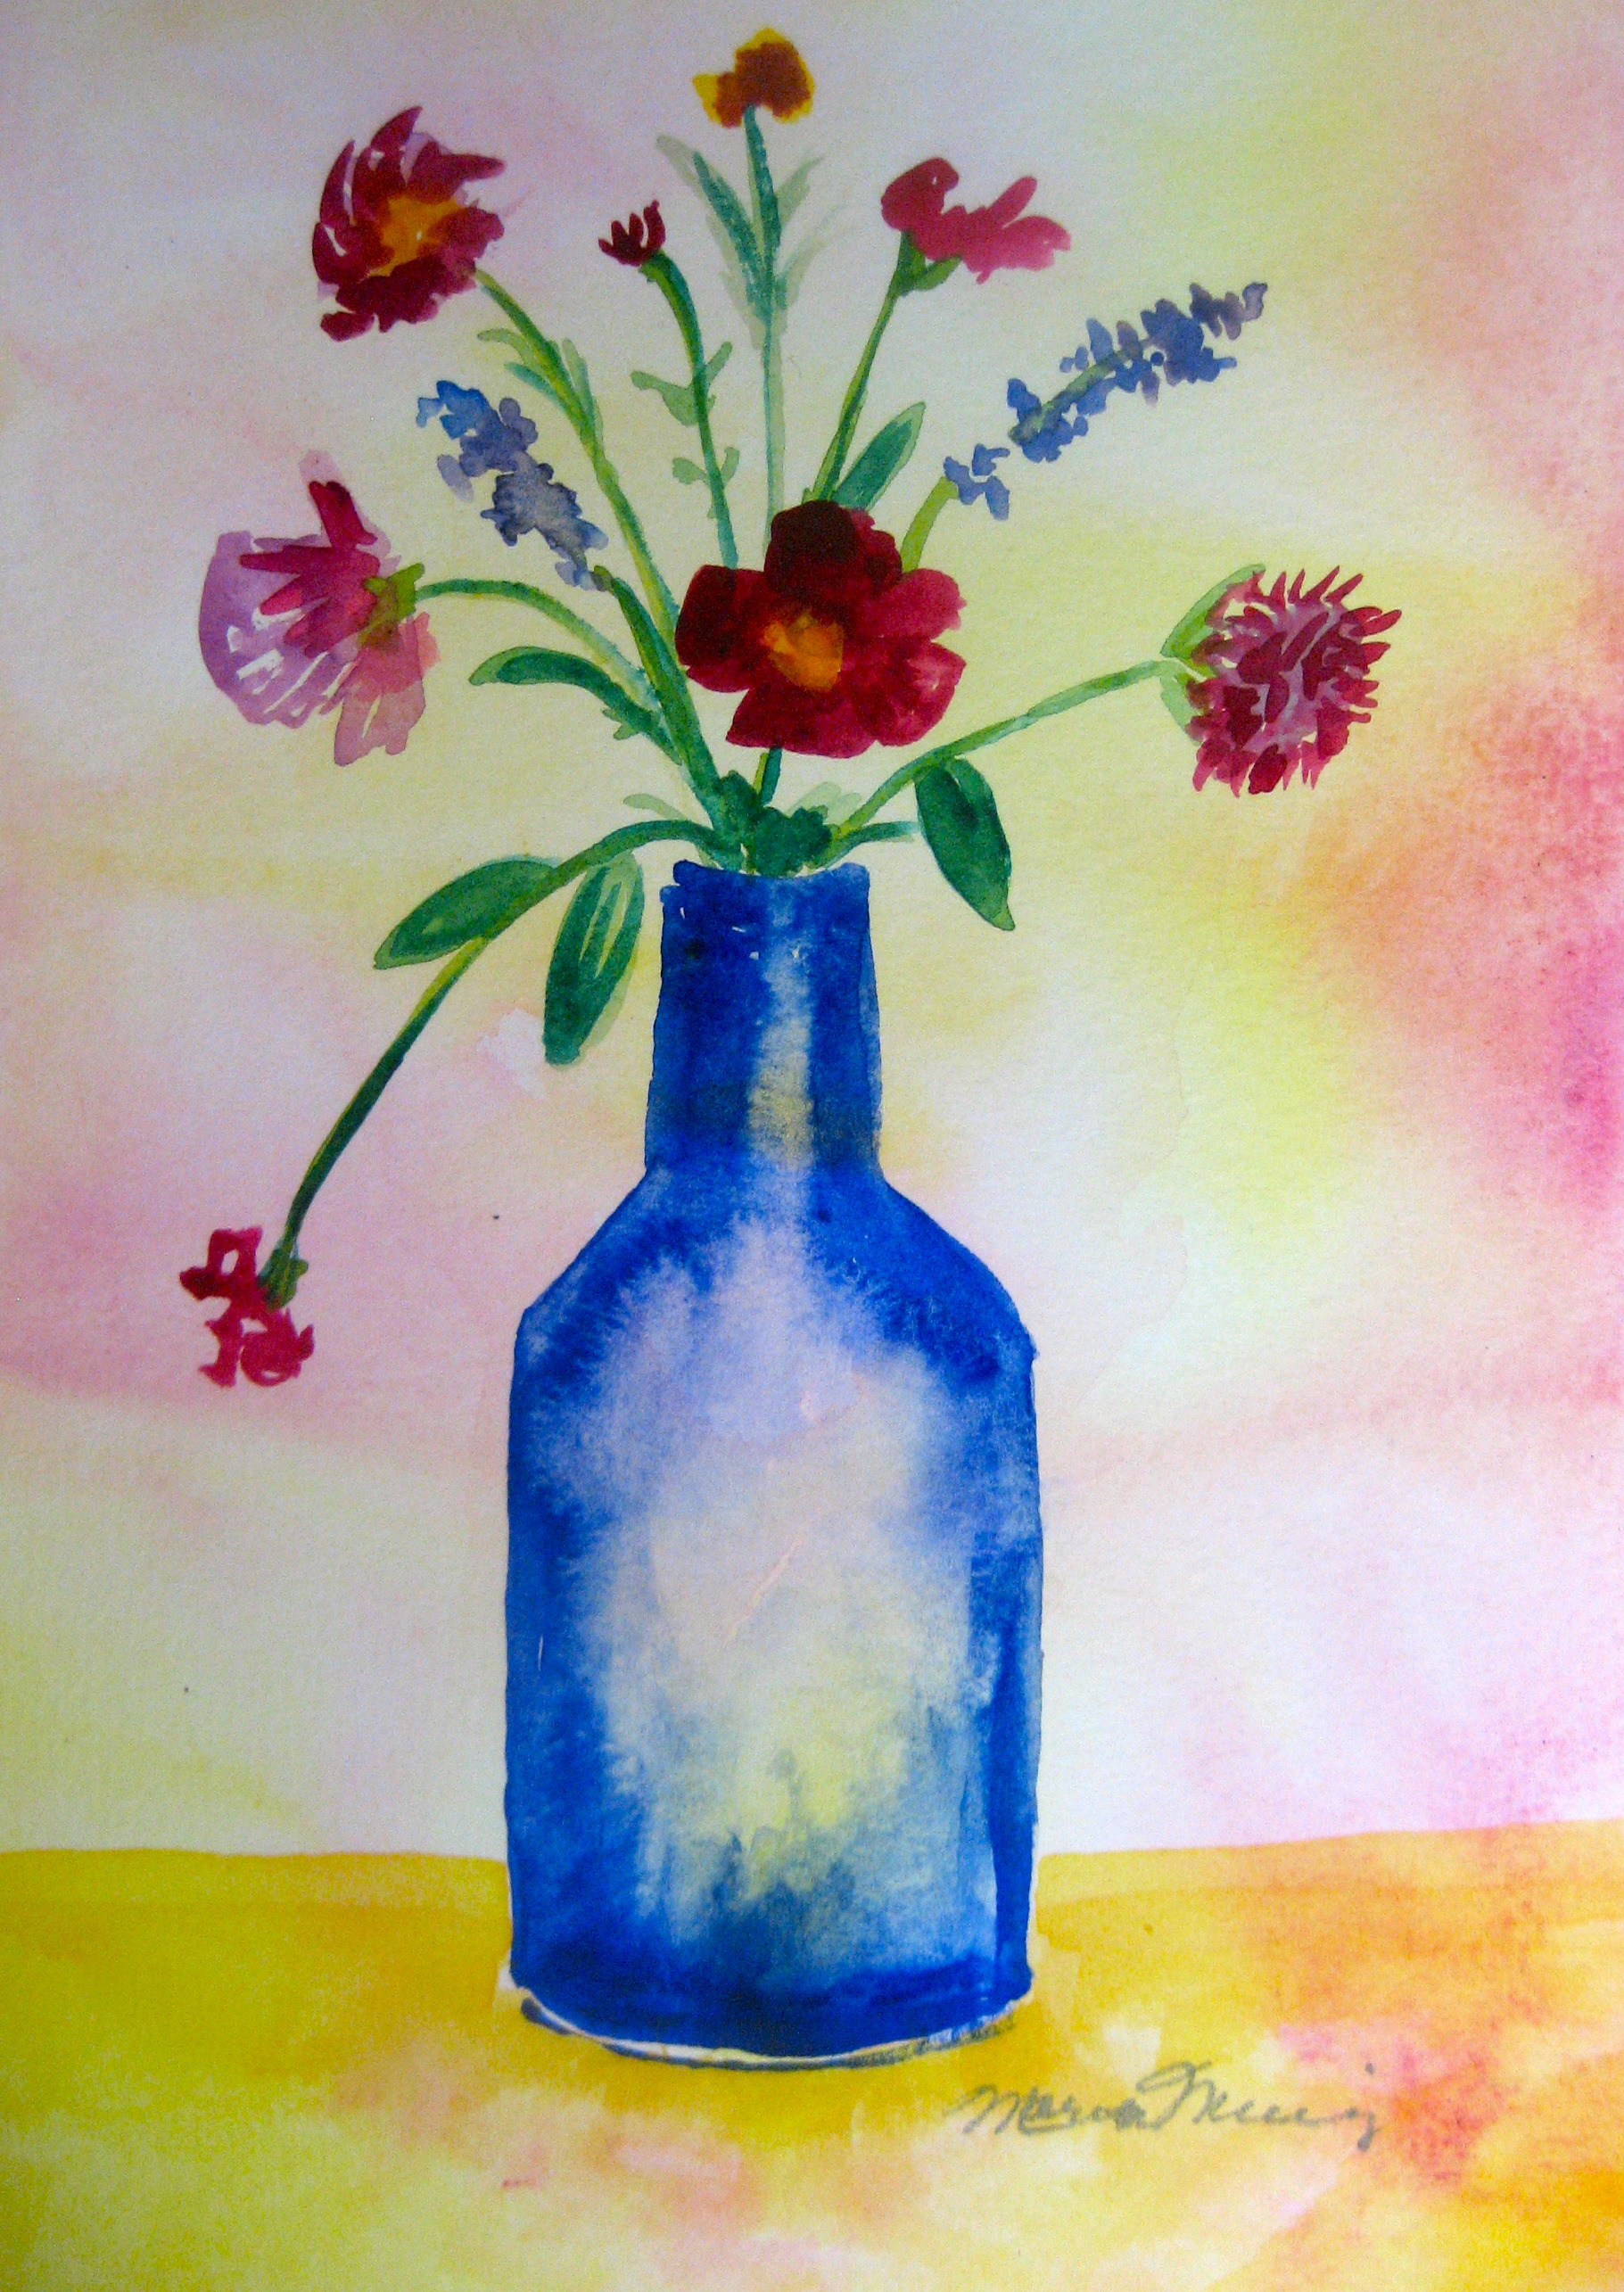 The Blue Bottle-original watercolor